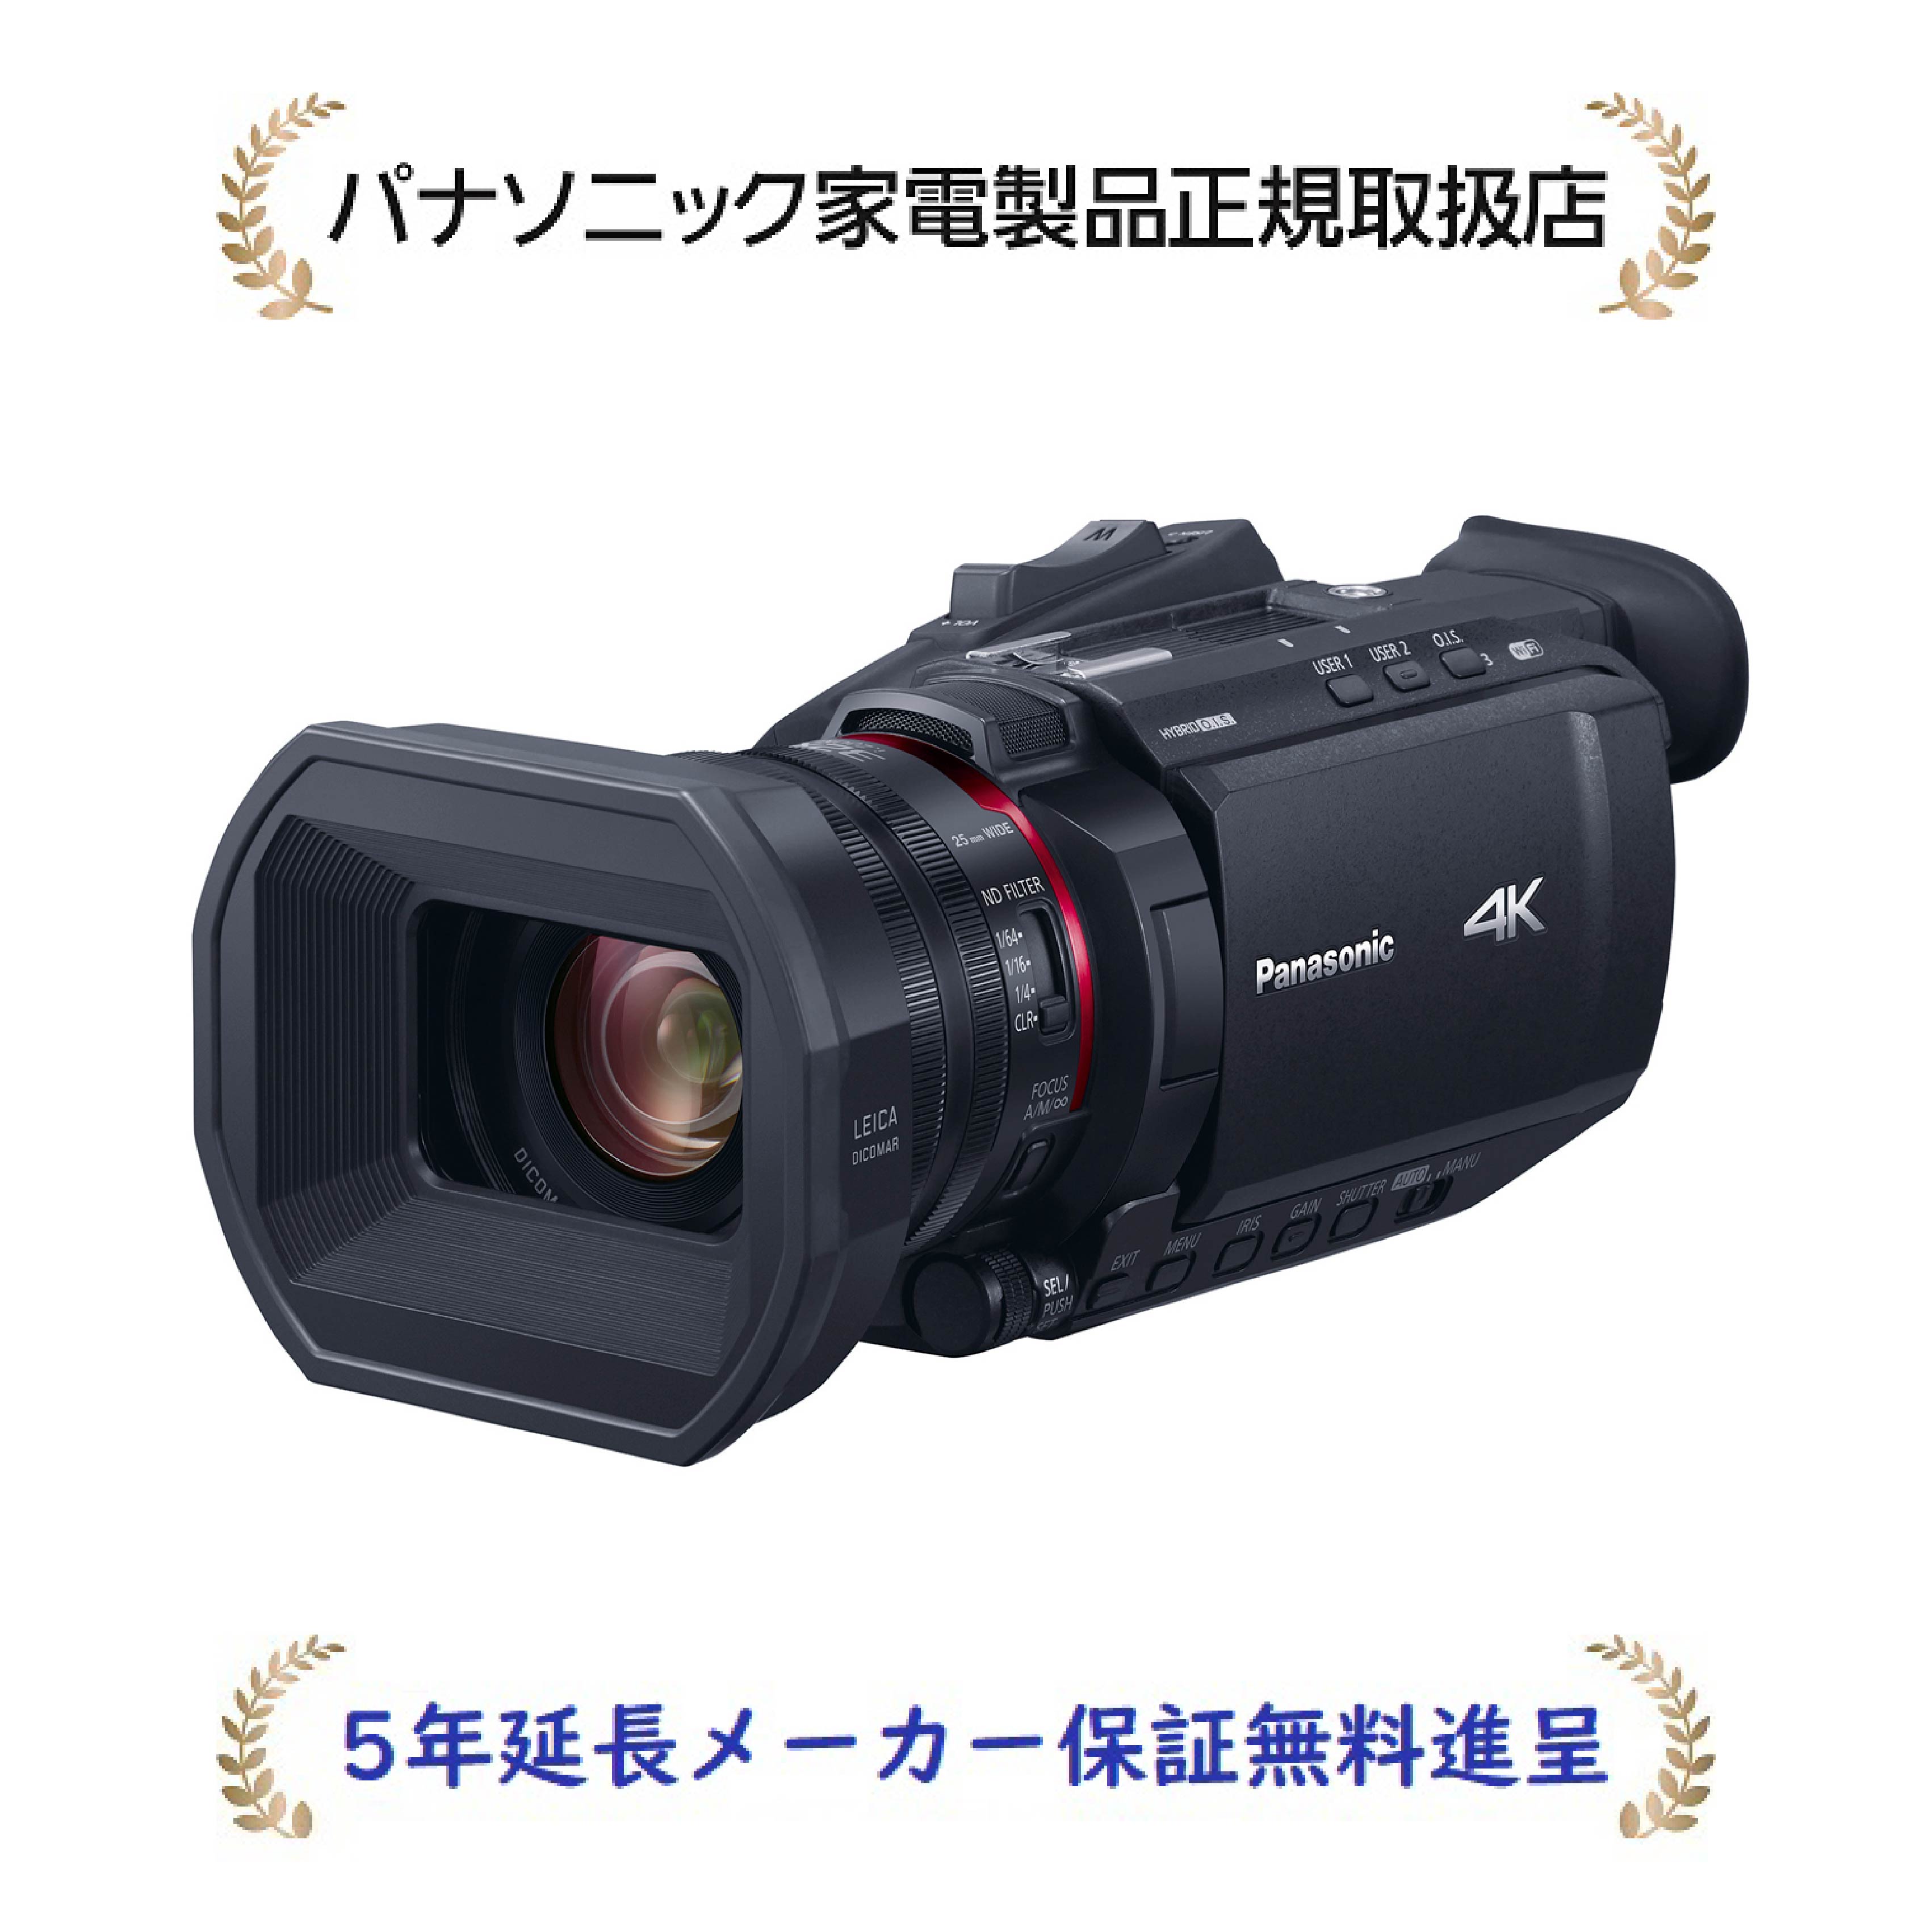 パナソニック HC-X1500-K【5年延長メーカー保証無料進呈】(HCX1500K) デジタル4Kビデオカメラ